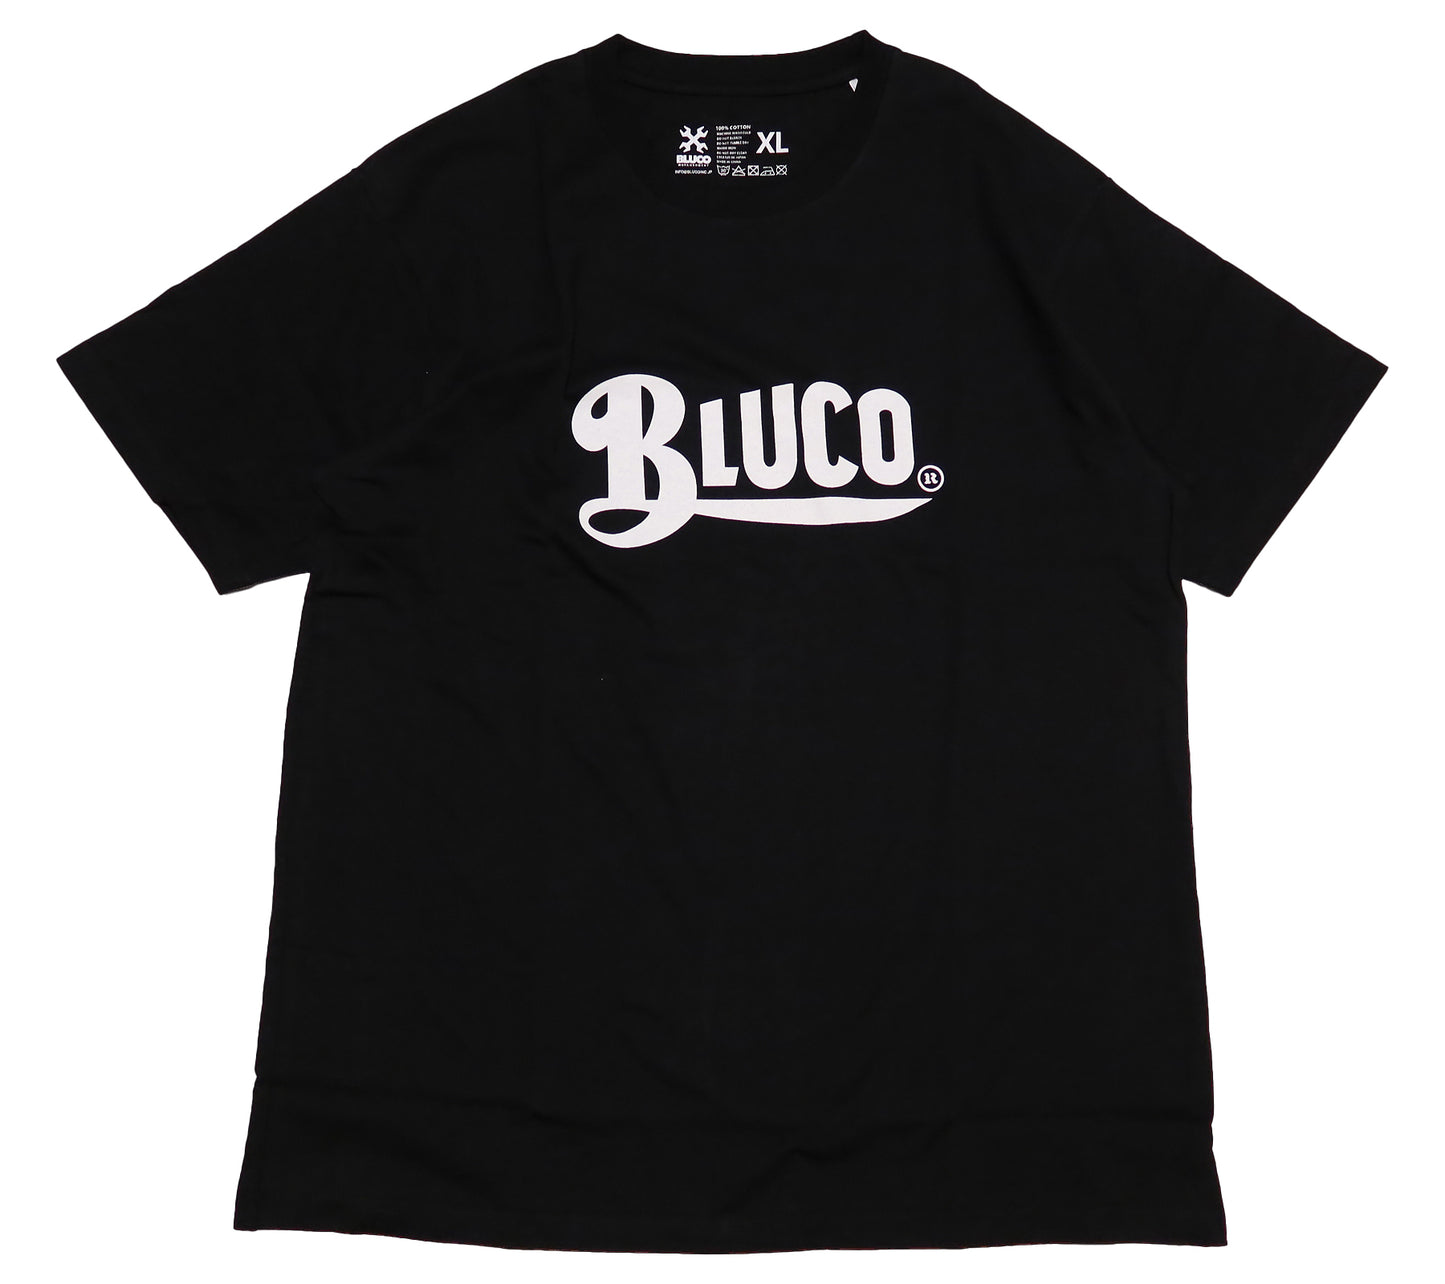 BLUCO ブルコ Tシャツ OLD LOGO ロゴプリント メンズ 半袖 ブラック 143-22-002